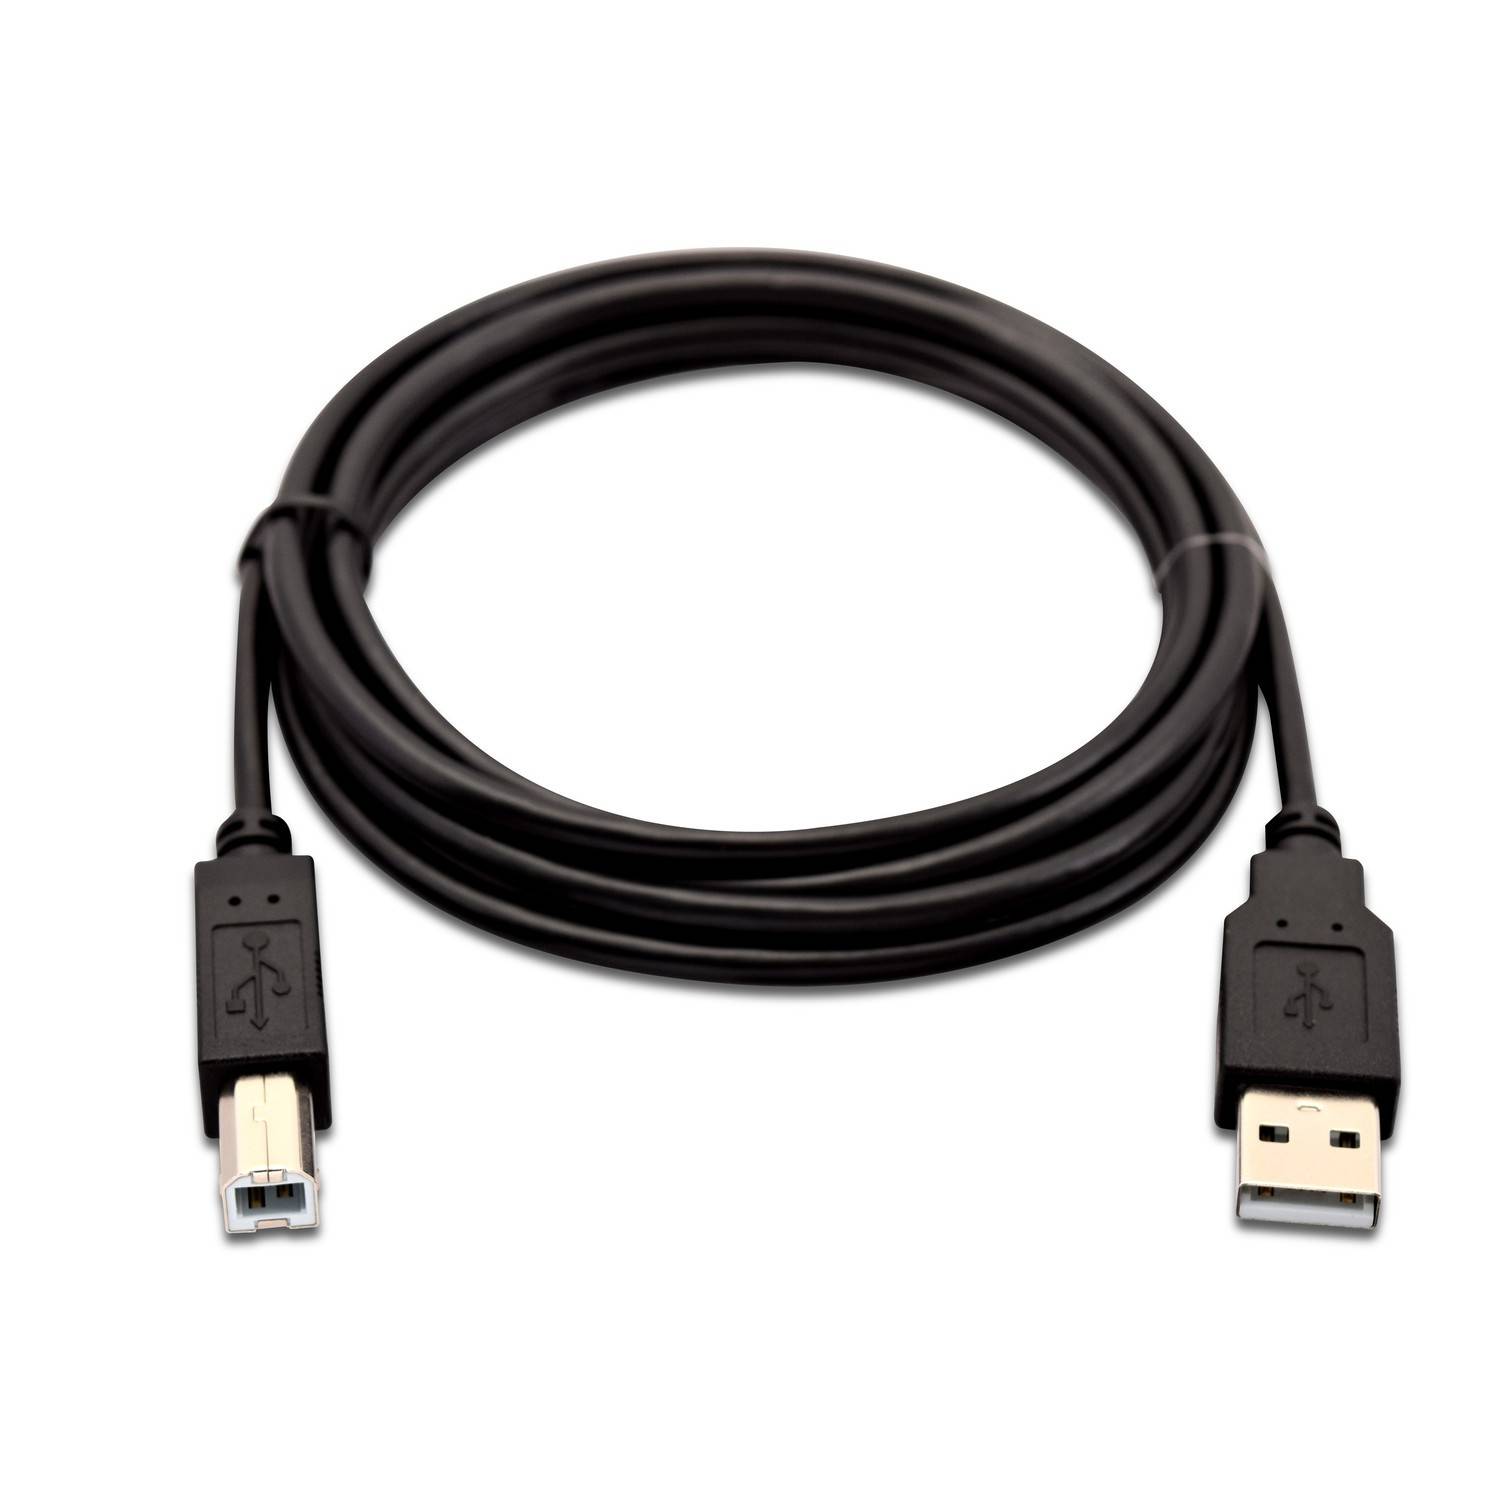 Rca Informatique - Image du produit : USB 2.0 A TO B CABLE 2M 6.6FT DATA CABLE 480MBPS PERIPHERALS